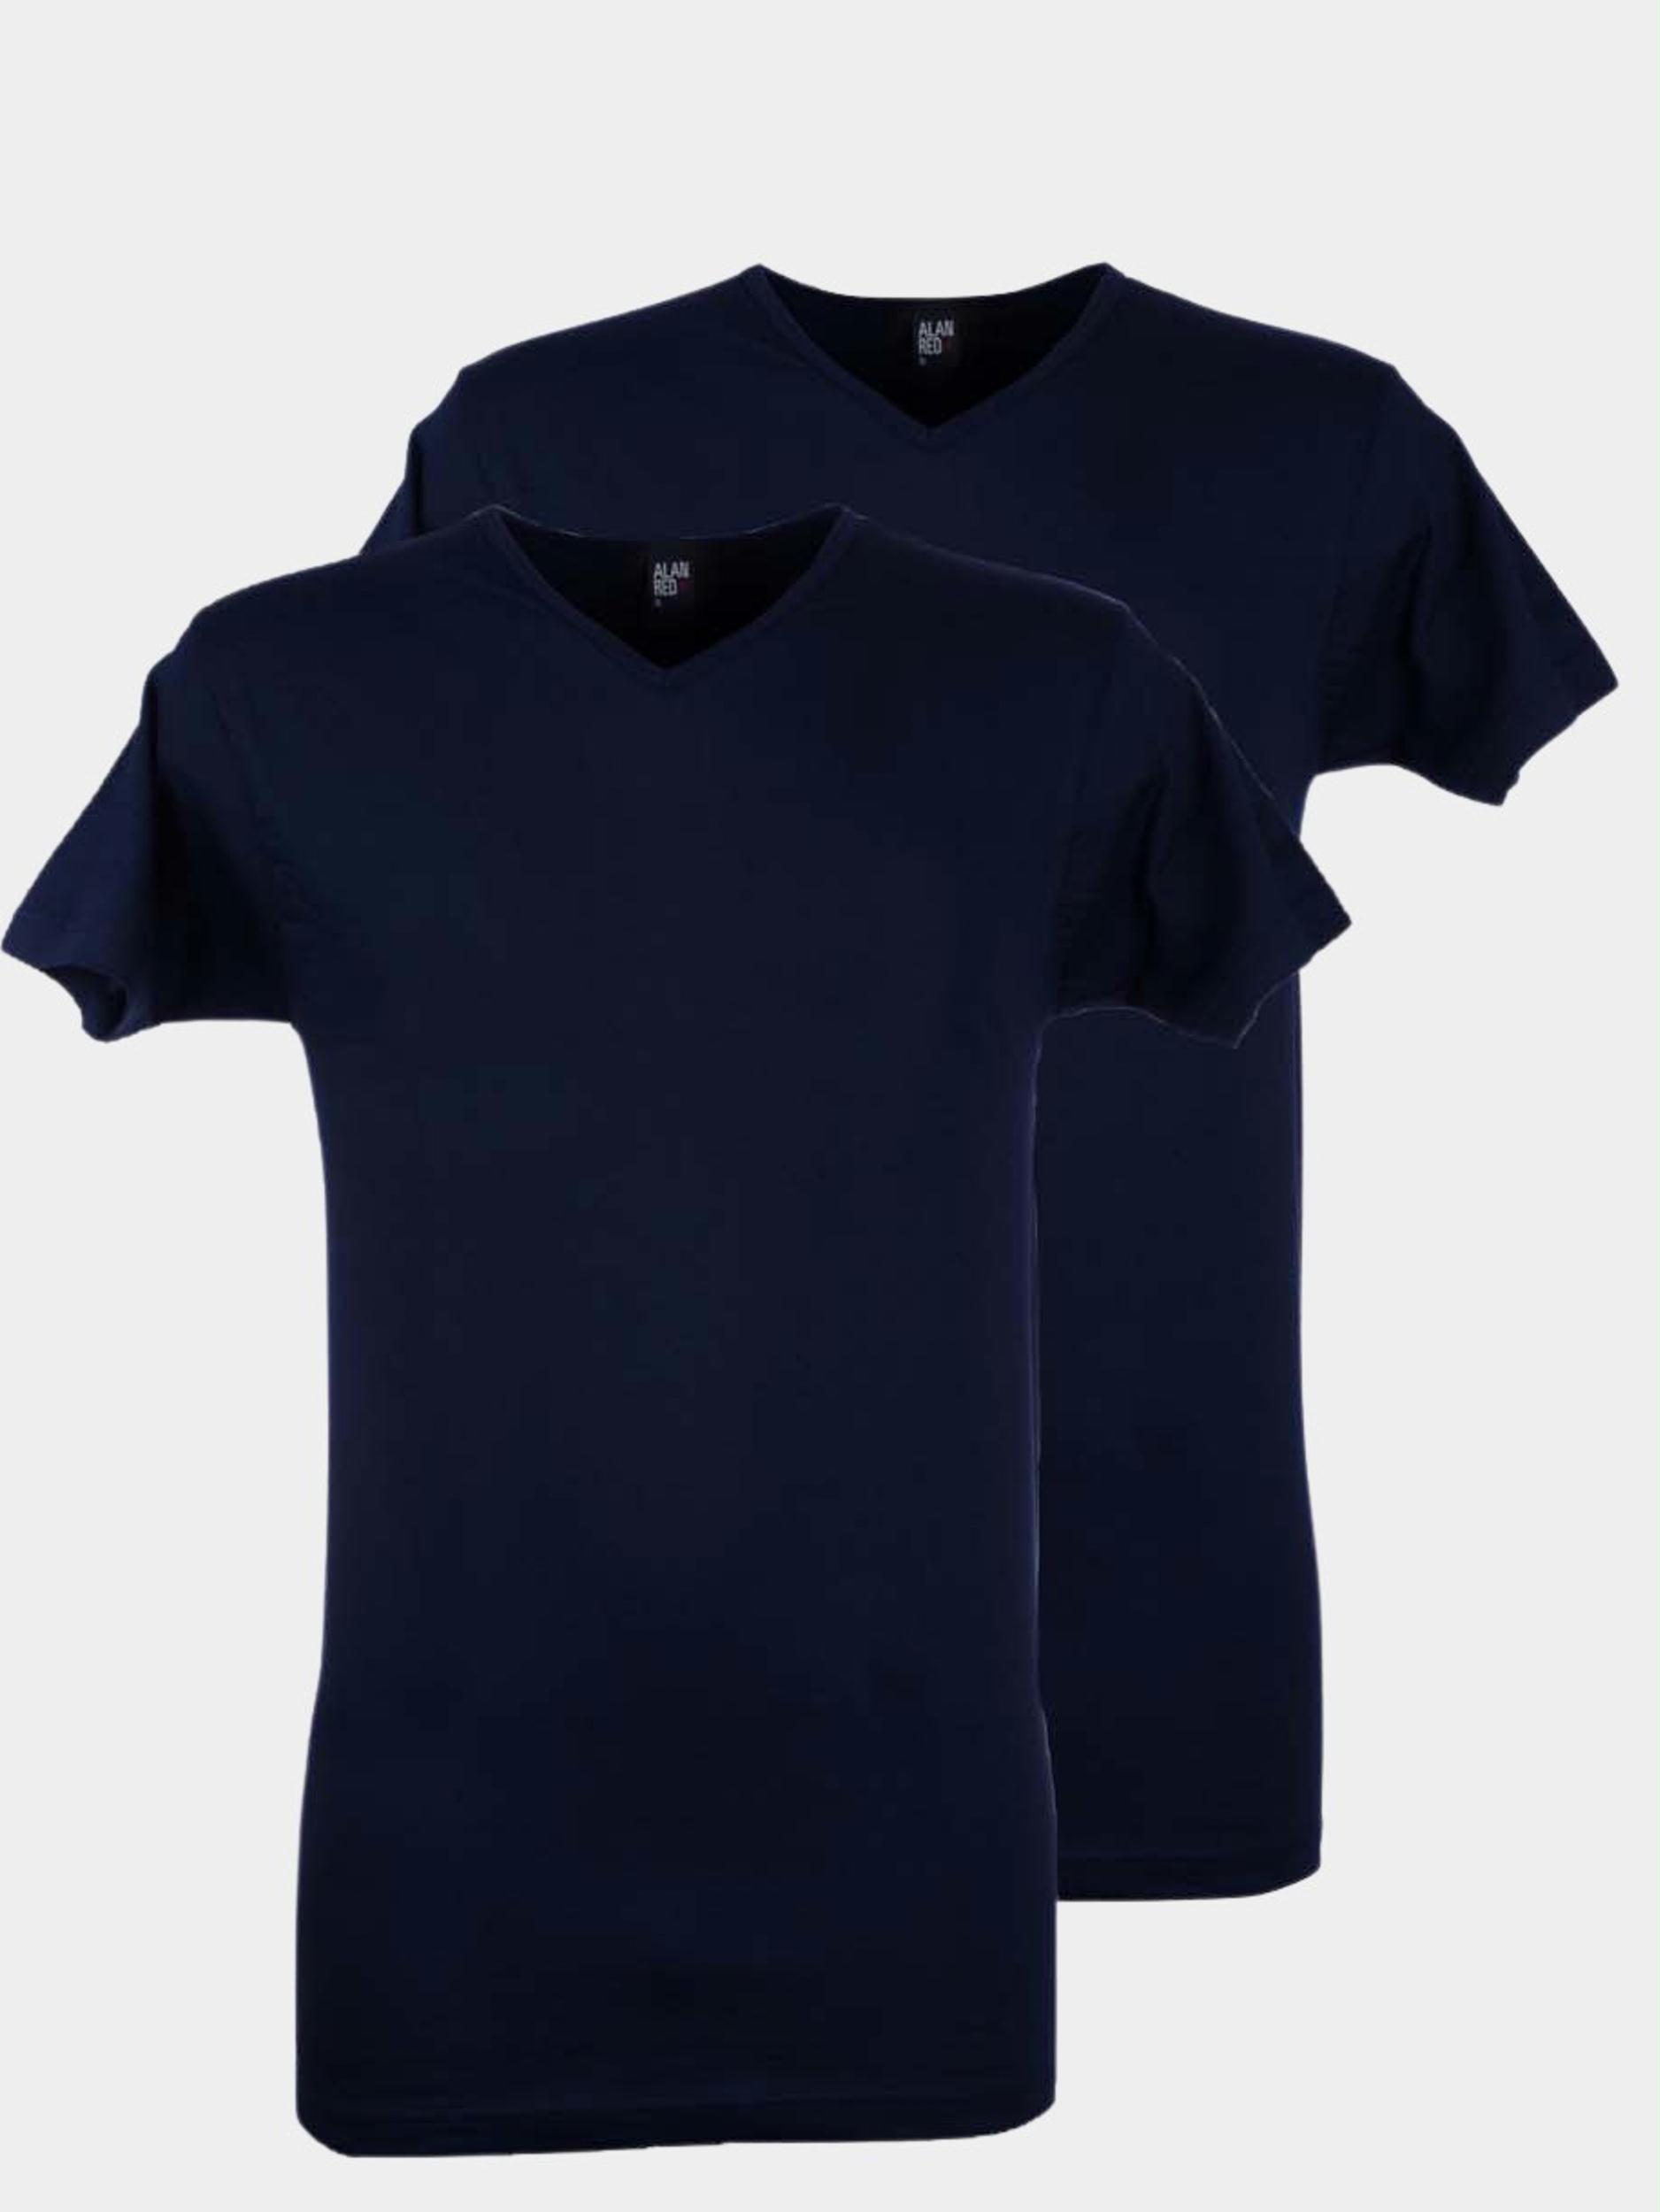 Afbeelding van Alan Red T-shirt vermont navy v-hals 2-pack 6671.2/06